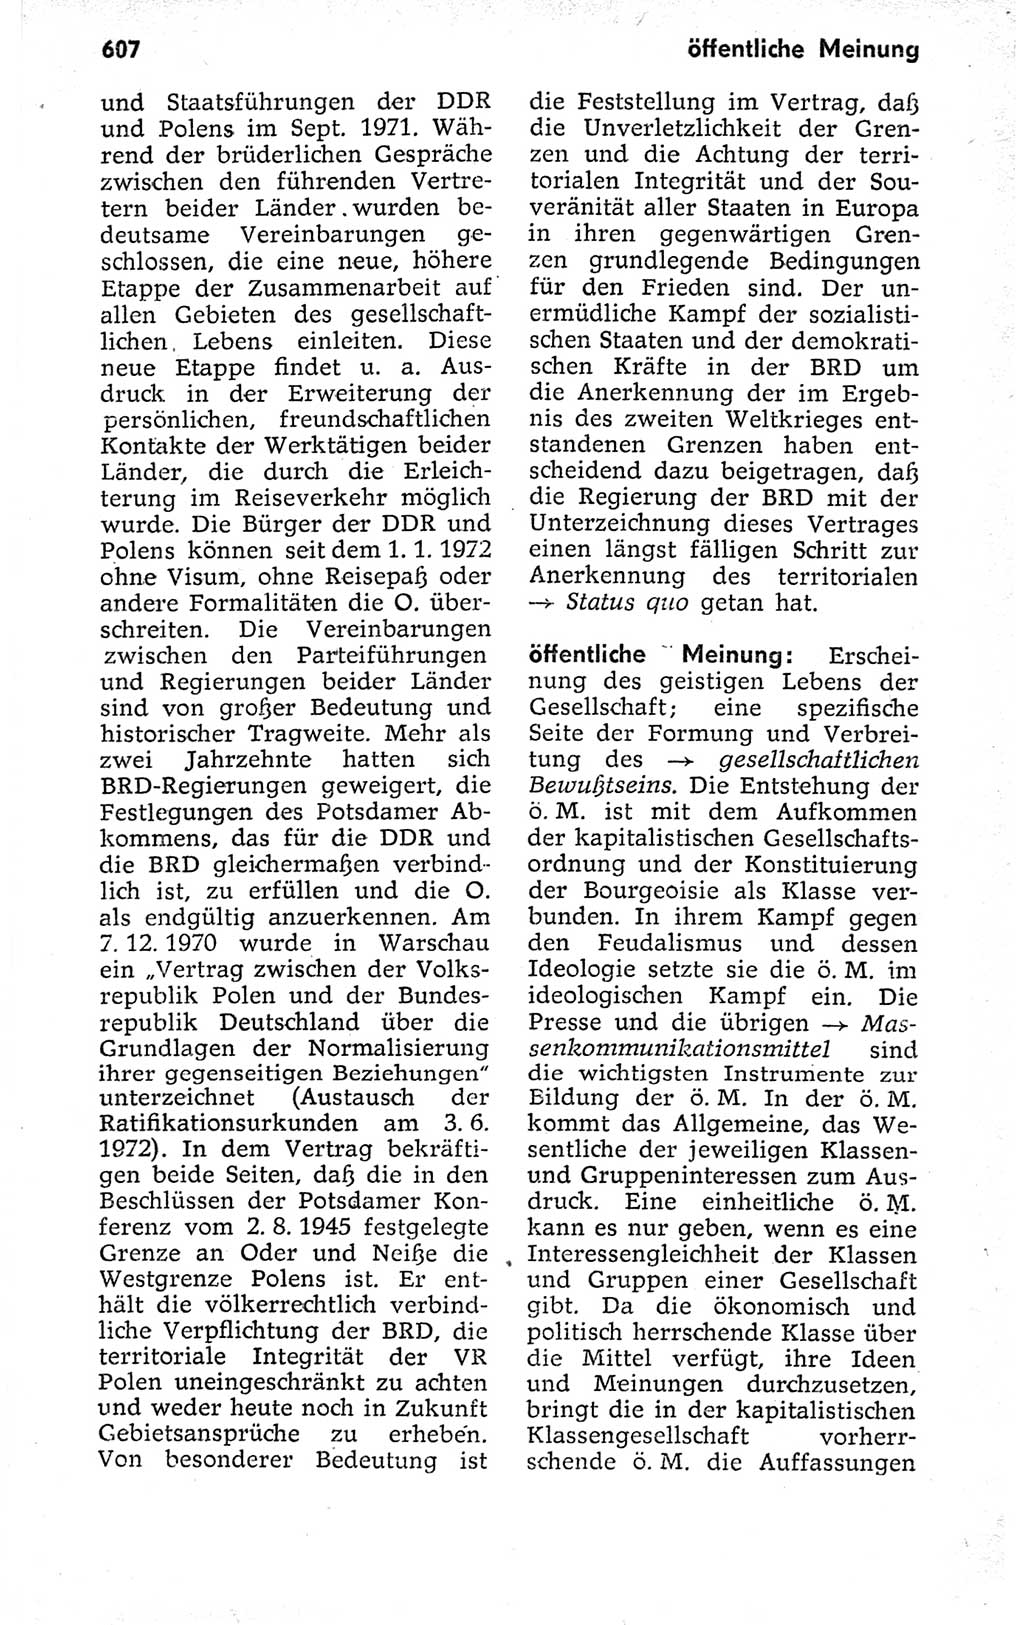 Kleines politisches Wörterbuch [Deutsche Demokratische Republik (DDR)] 1973, Seite 607 (Kl. pol. Wb. DDR 1973, S. 607)